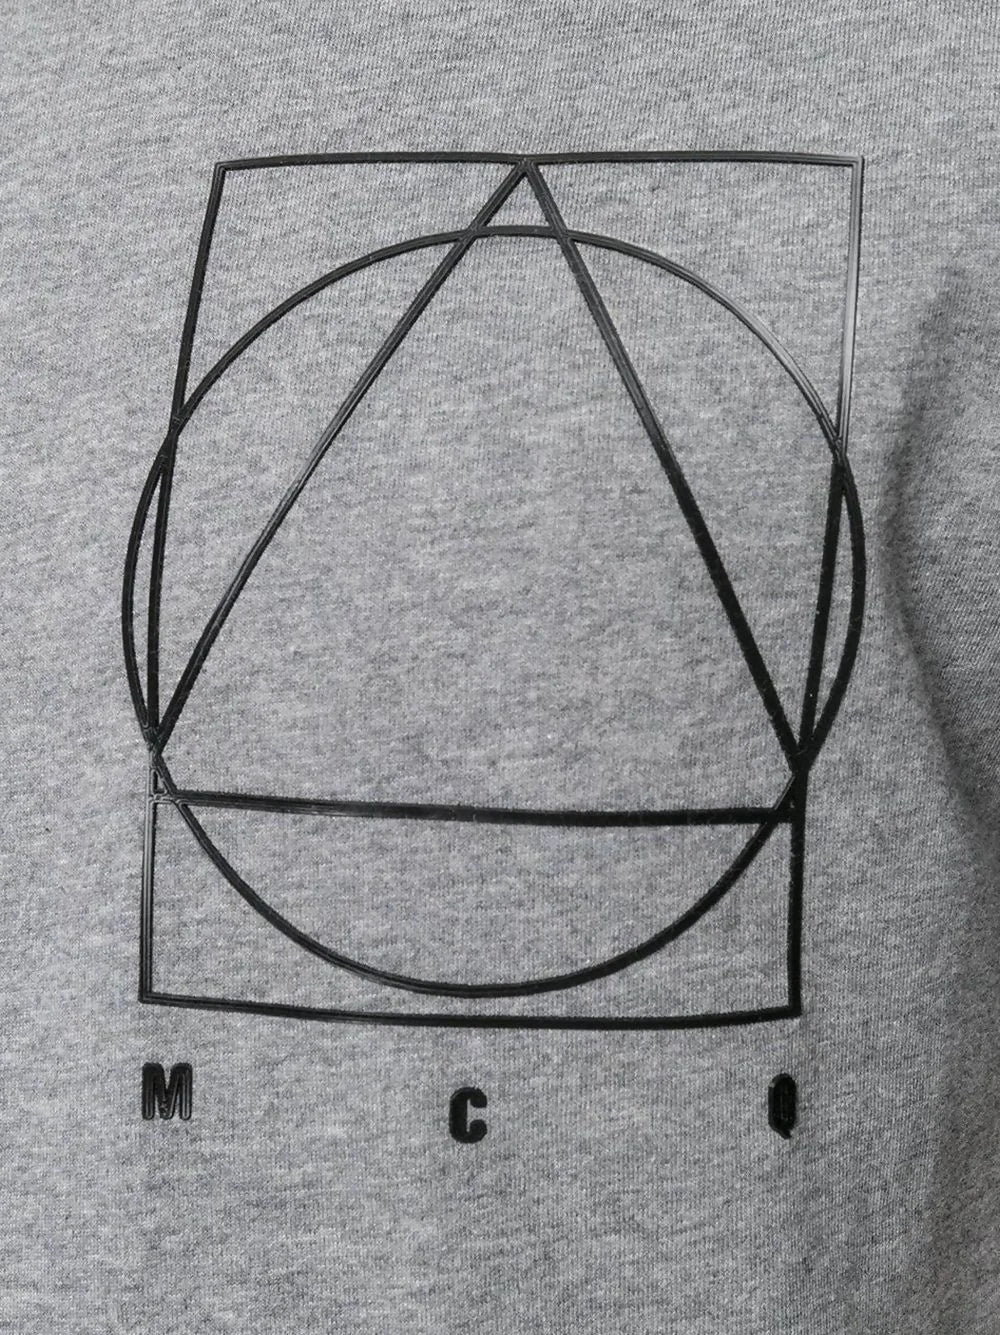 Alexander McQueen T-Shirt (Grey)